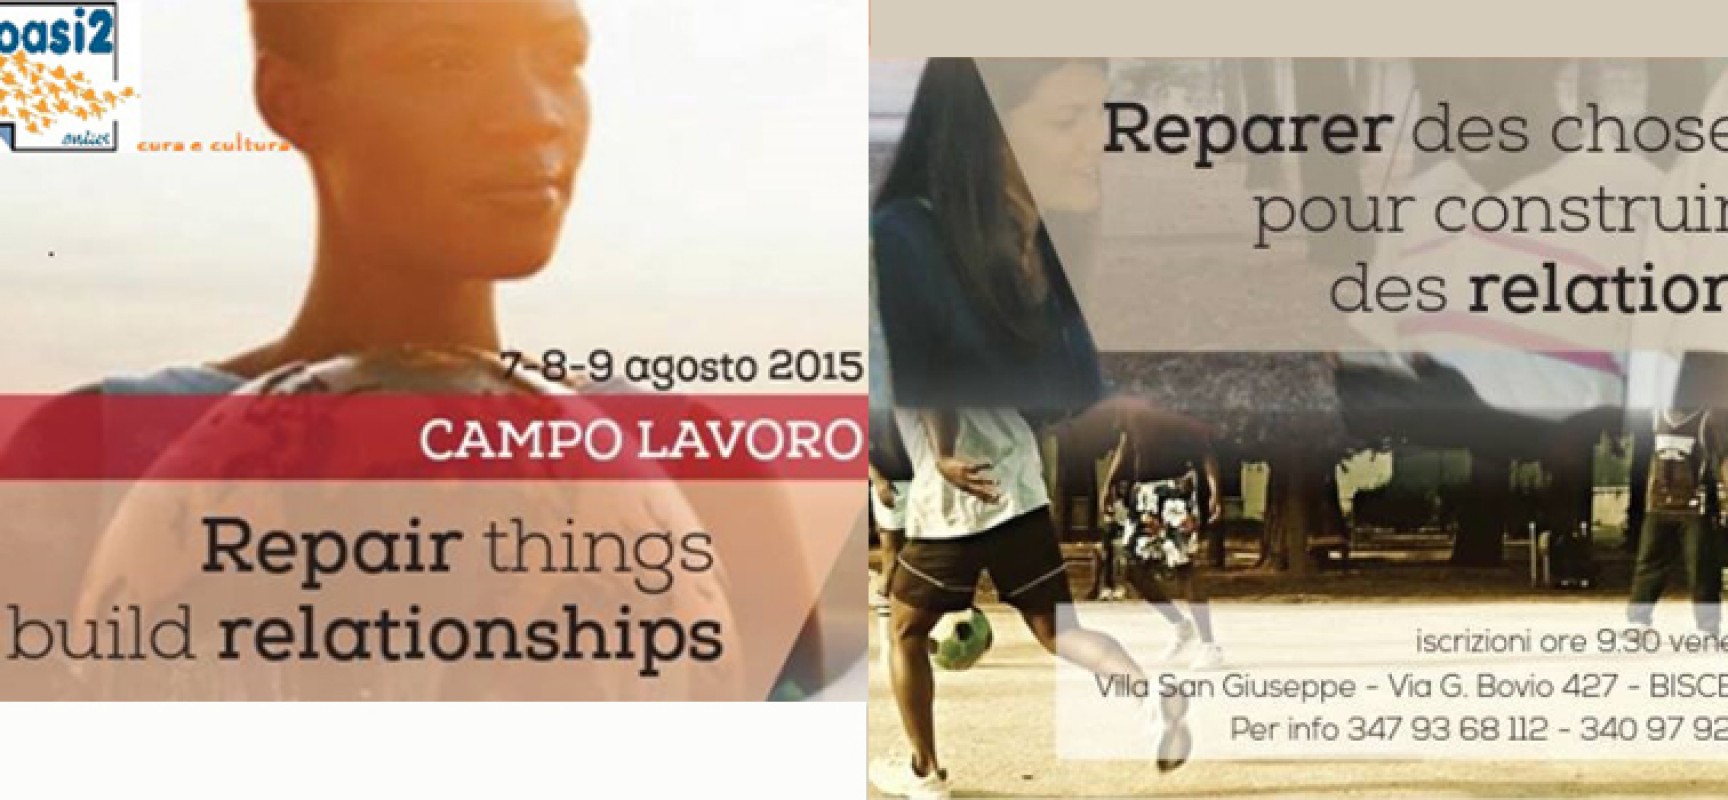 Al via “Riparare cose, costruire relazioni” a Villa San Giuseppe: partecipazione aperta a tutti